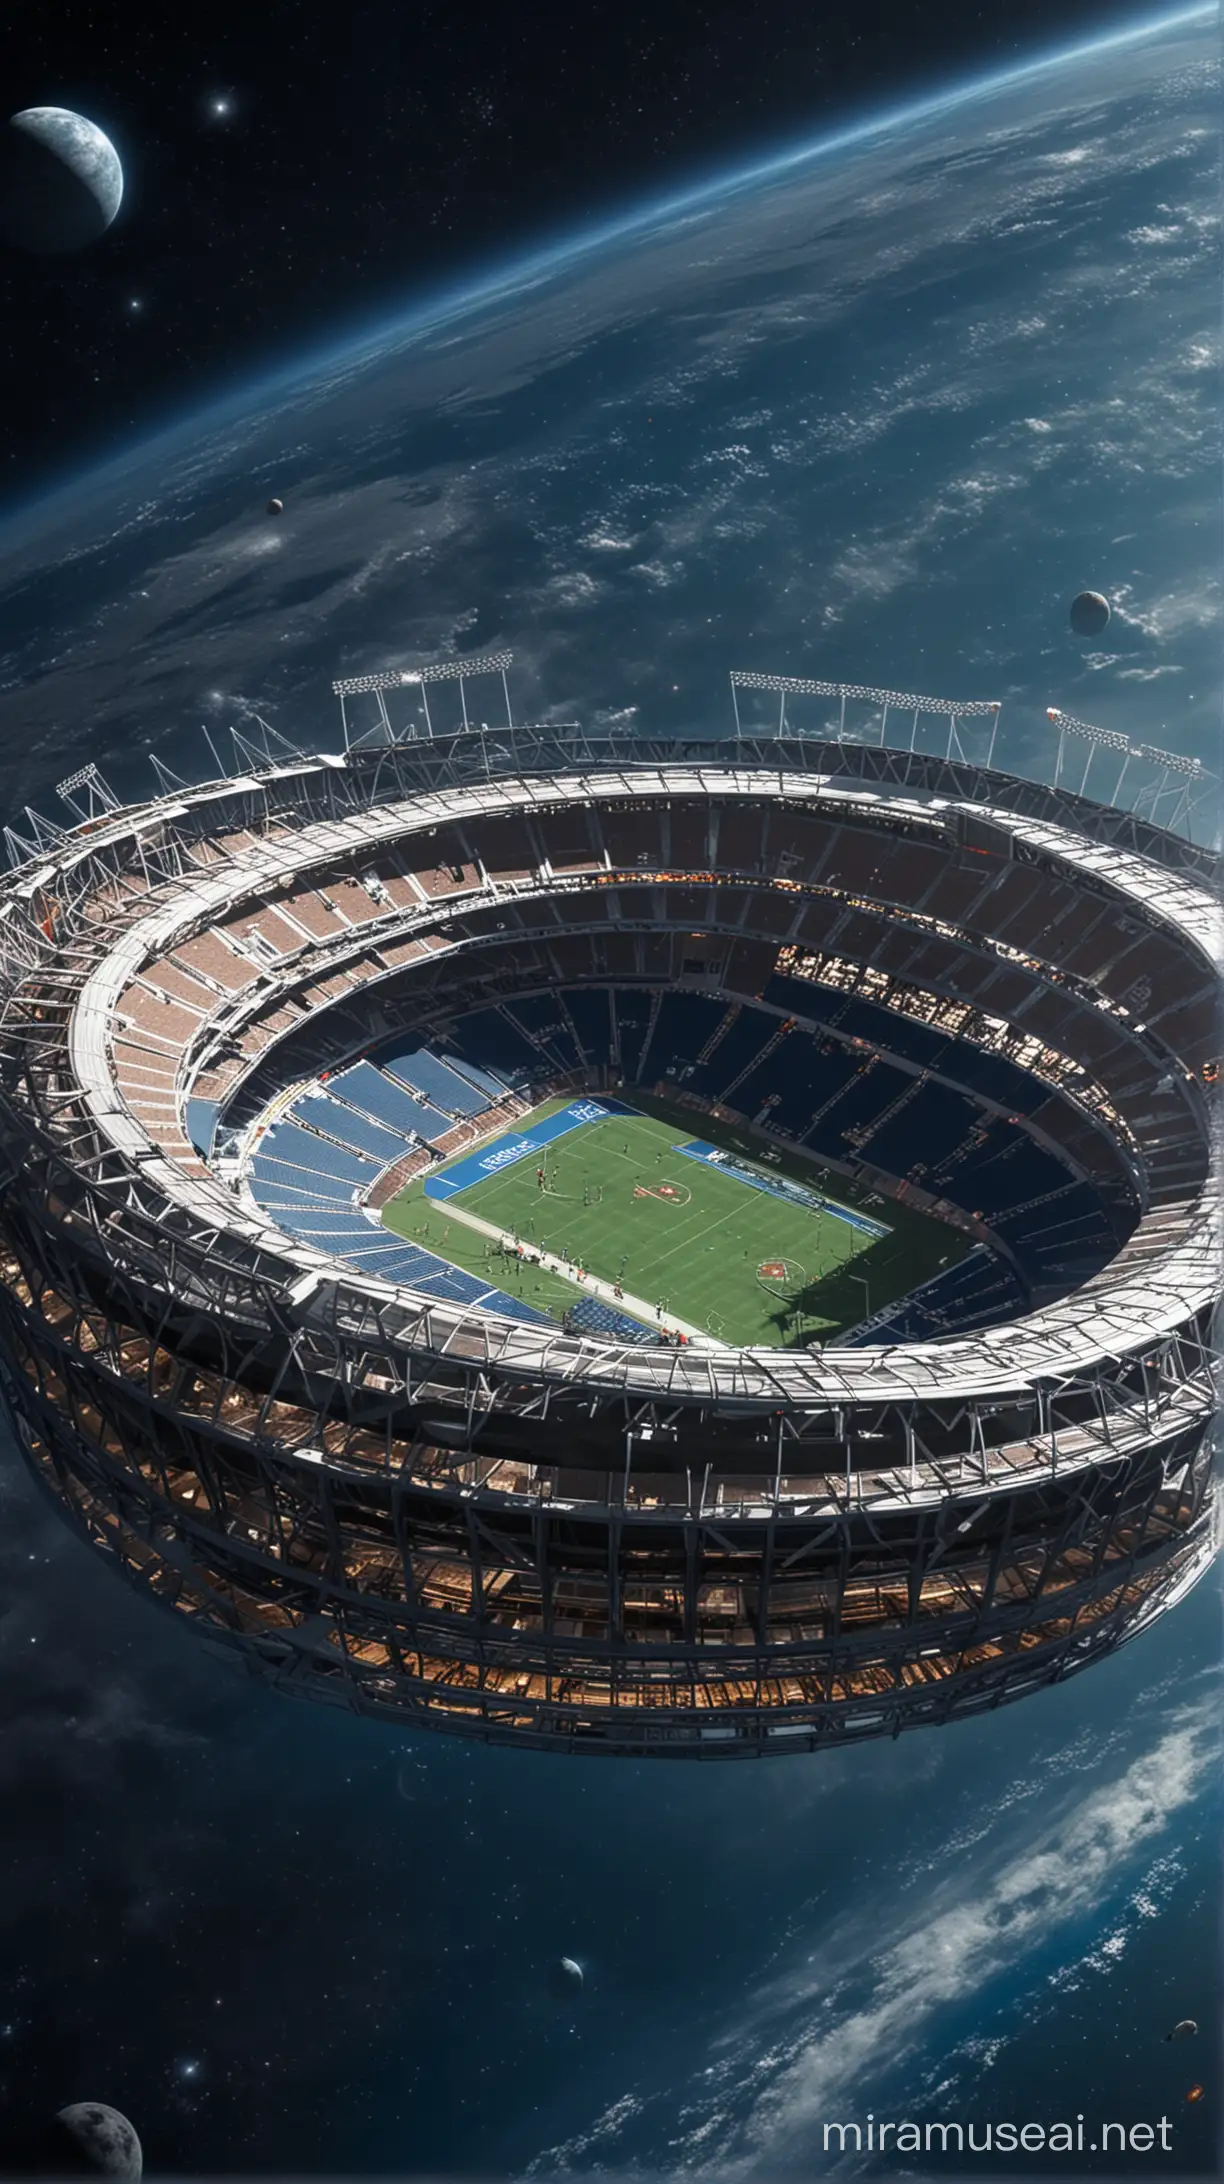 Space Stadium Futuristic Arena Floating Amidst Celestial Bodies